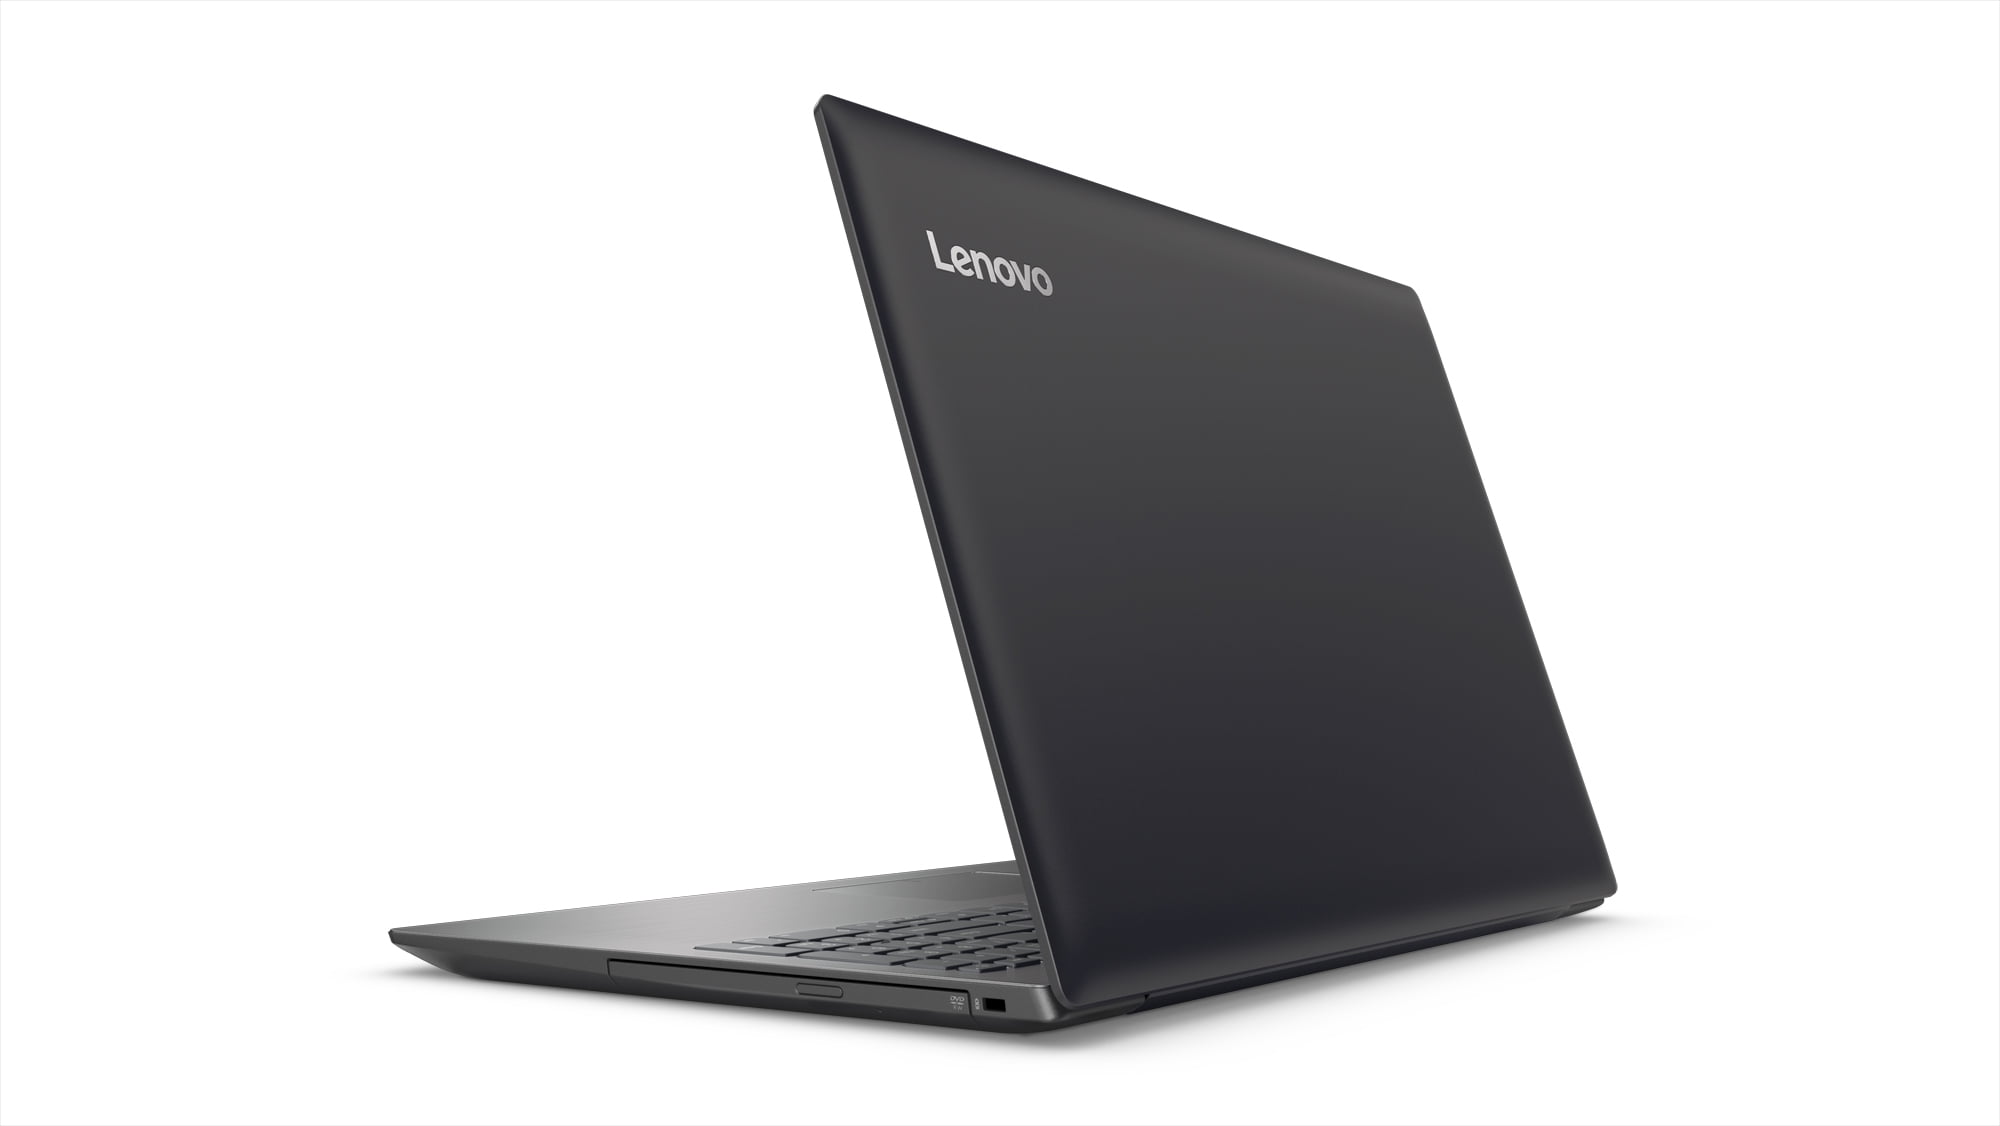 Lenovo ideapad 320 15.6